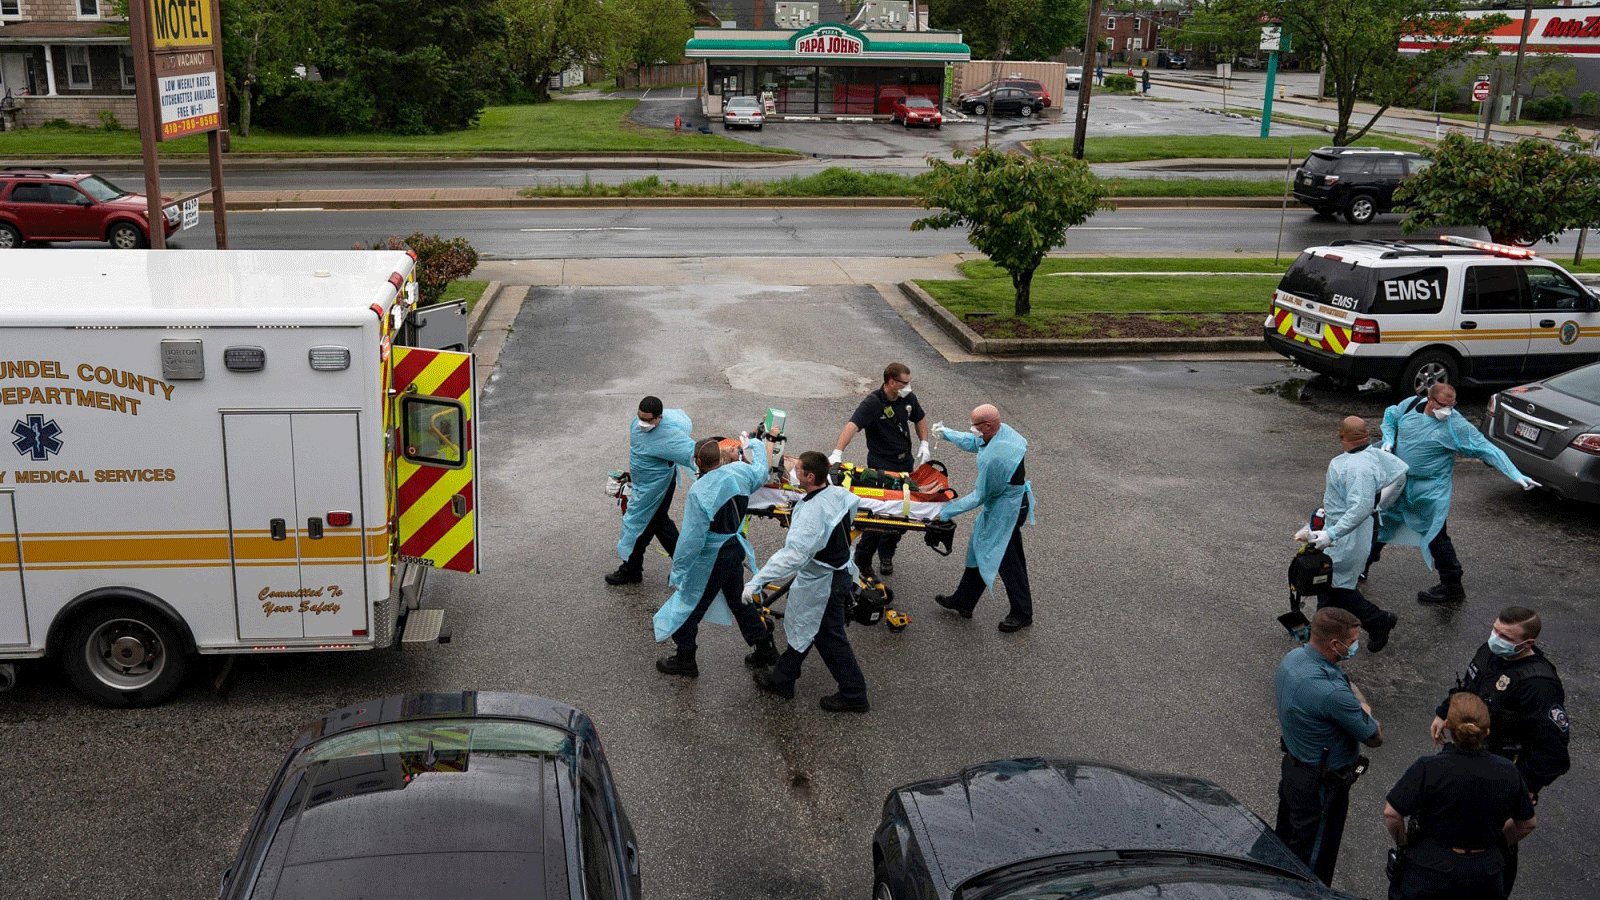 رجال الإطفاء والمسعفون يرتدون معدات الوقاية الشخصية أثناء نقلهم لمريض توقف قلبه بنتيجة تناول جرعة زائدة من المخدرات في 6 مايو 2020 في بروكلين ، ماريلاند.